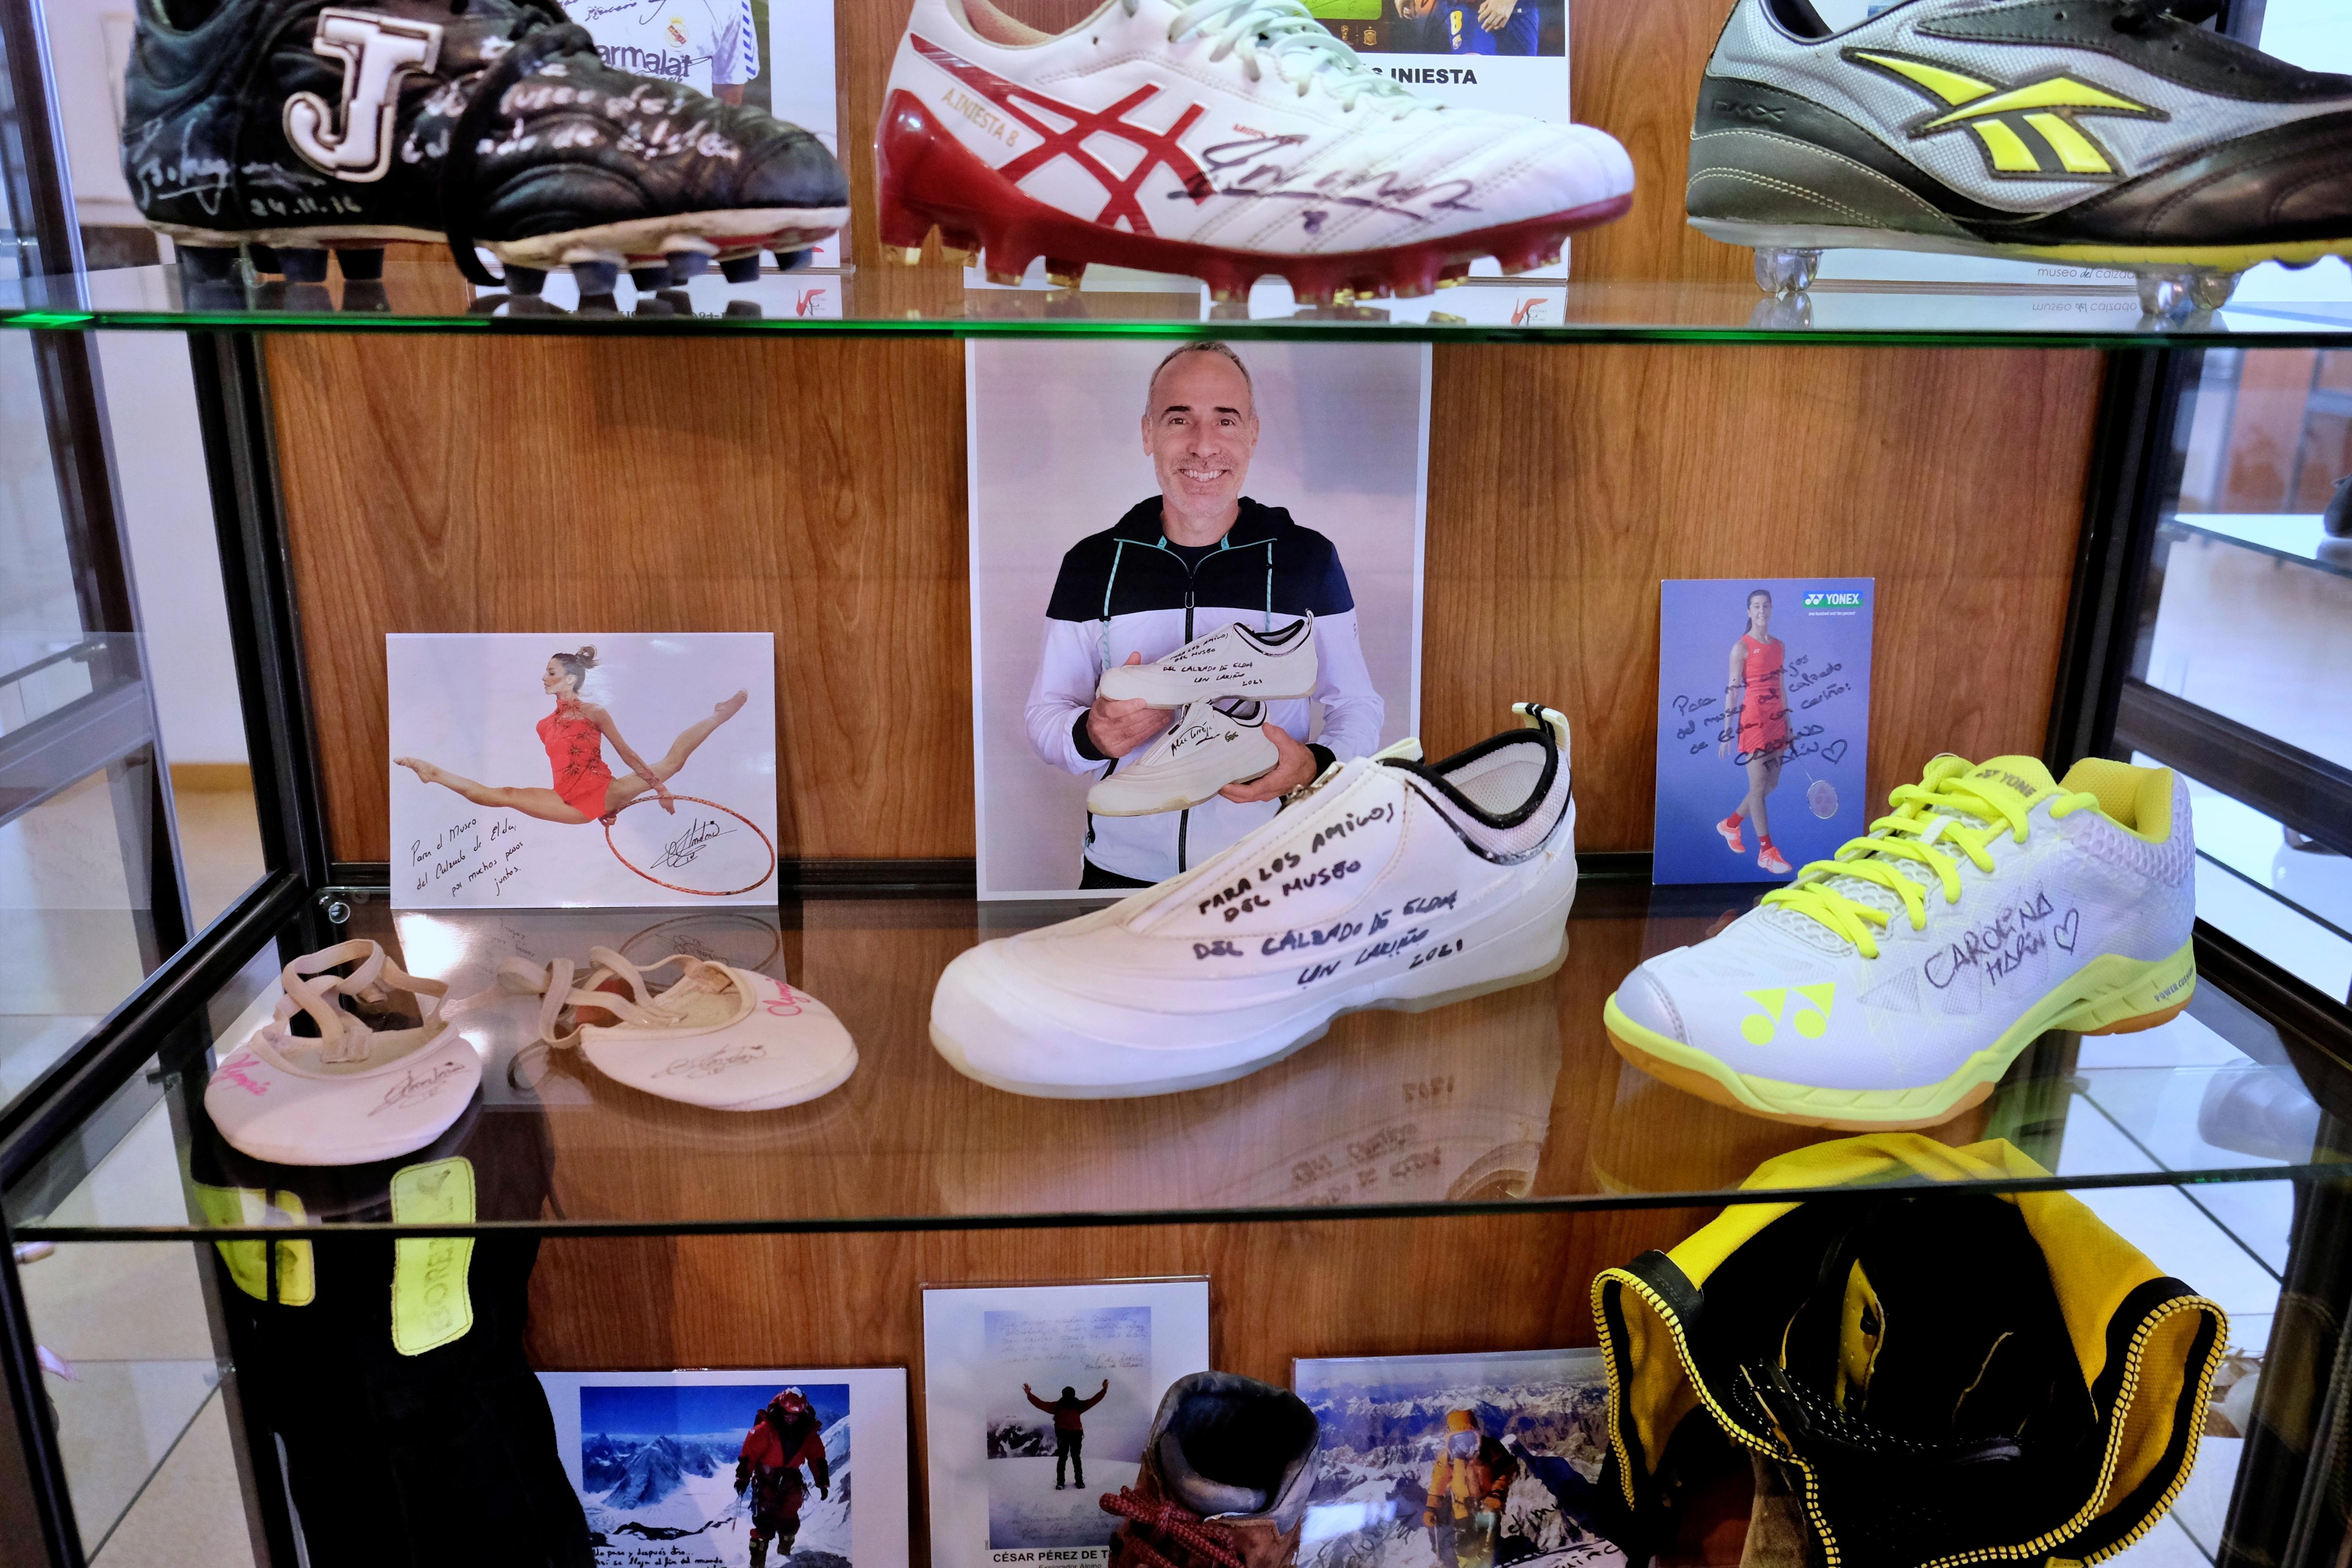 El Museo del Calzado amplía su colección ‘Zapatos con Historia’ con las zapatillas de Carolina Marín, Àlex Corretja y Almudena Cid